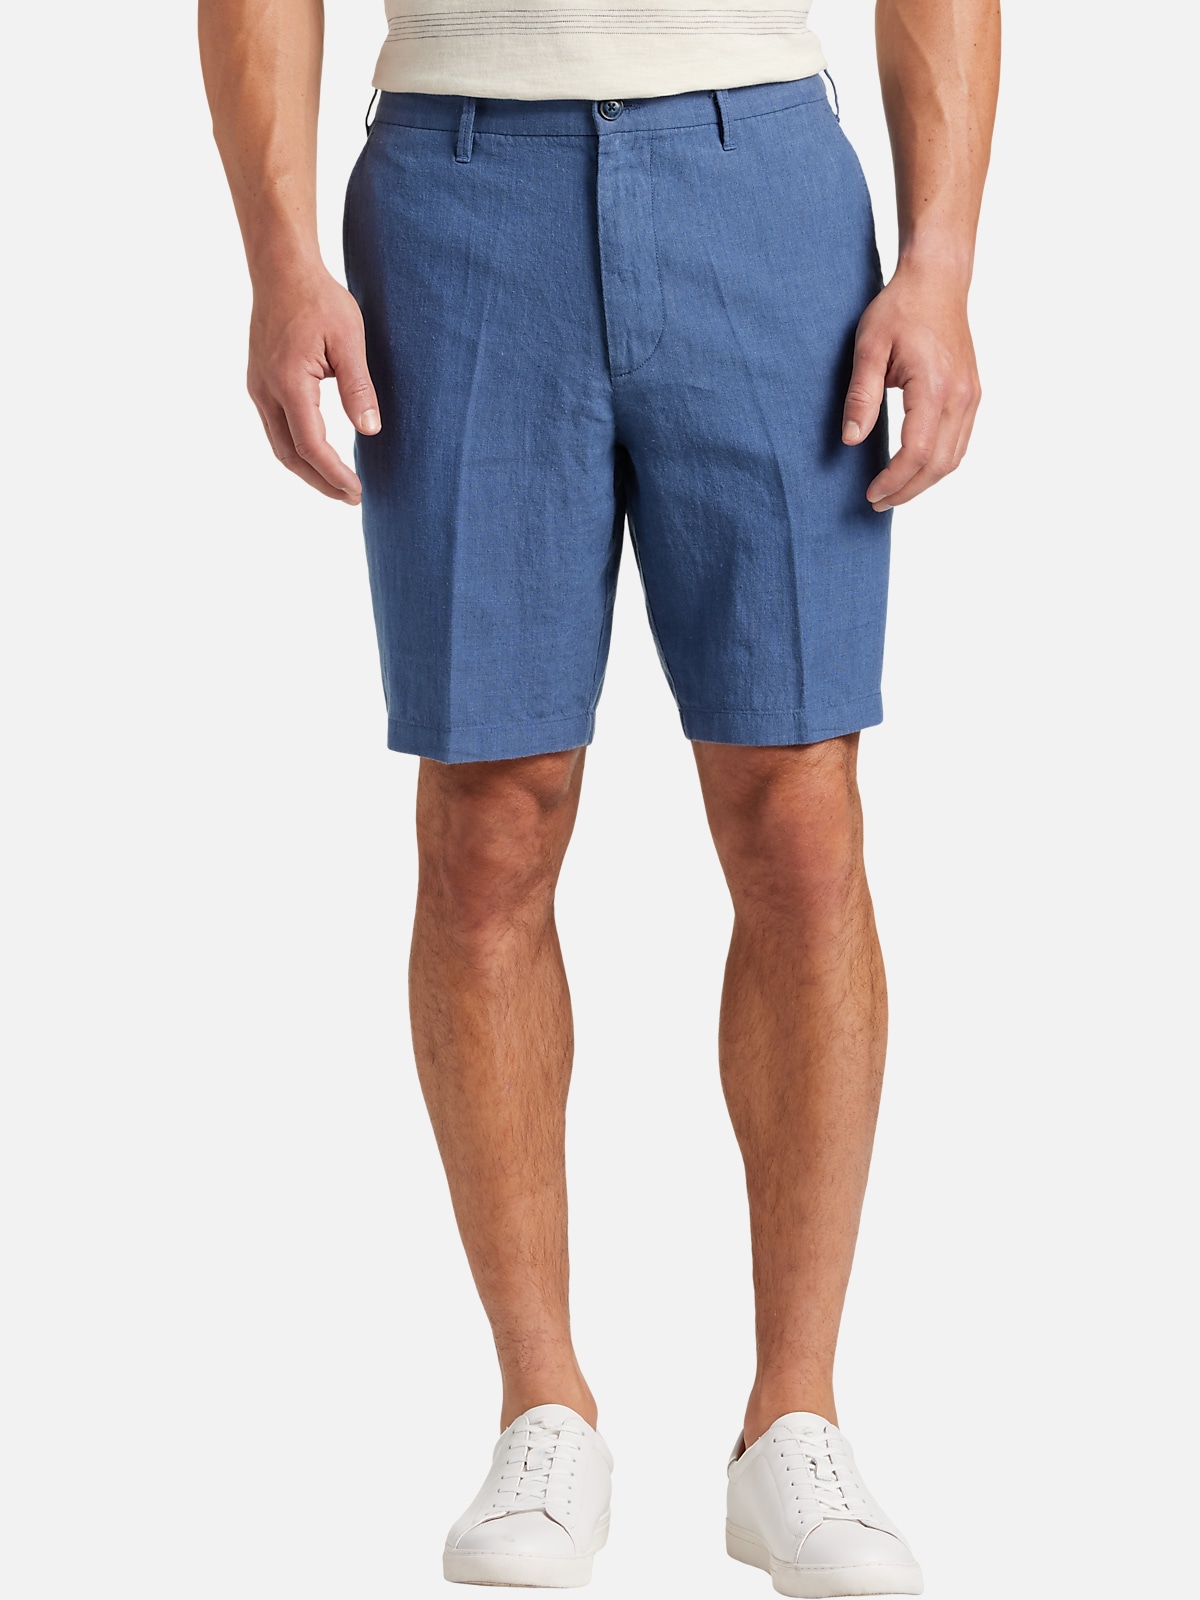 Joseph Abboud Modern Fit Linen Shorts | All Sale| Men's Wearhouse